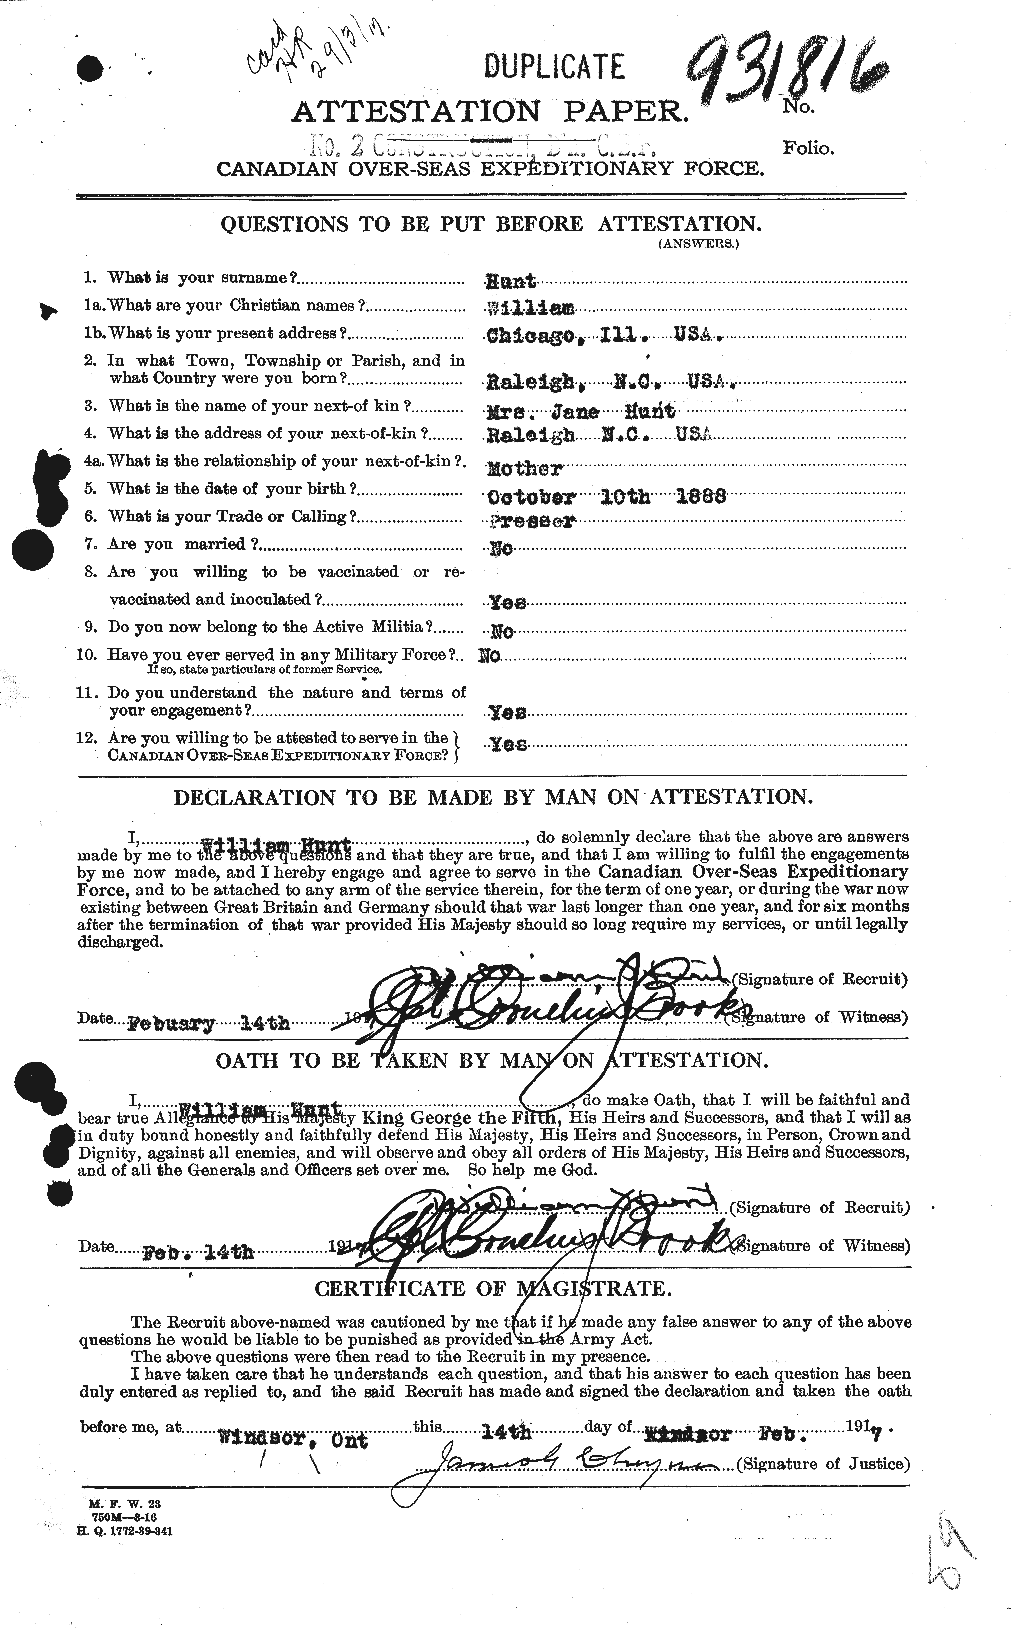 Dossiers du Personnel de la Première Guerre mondiale - CEC 408901a